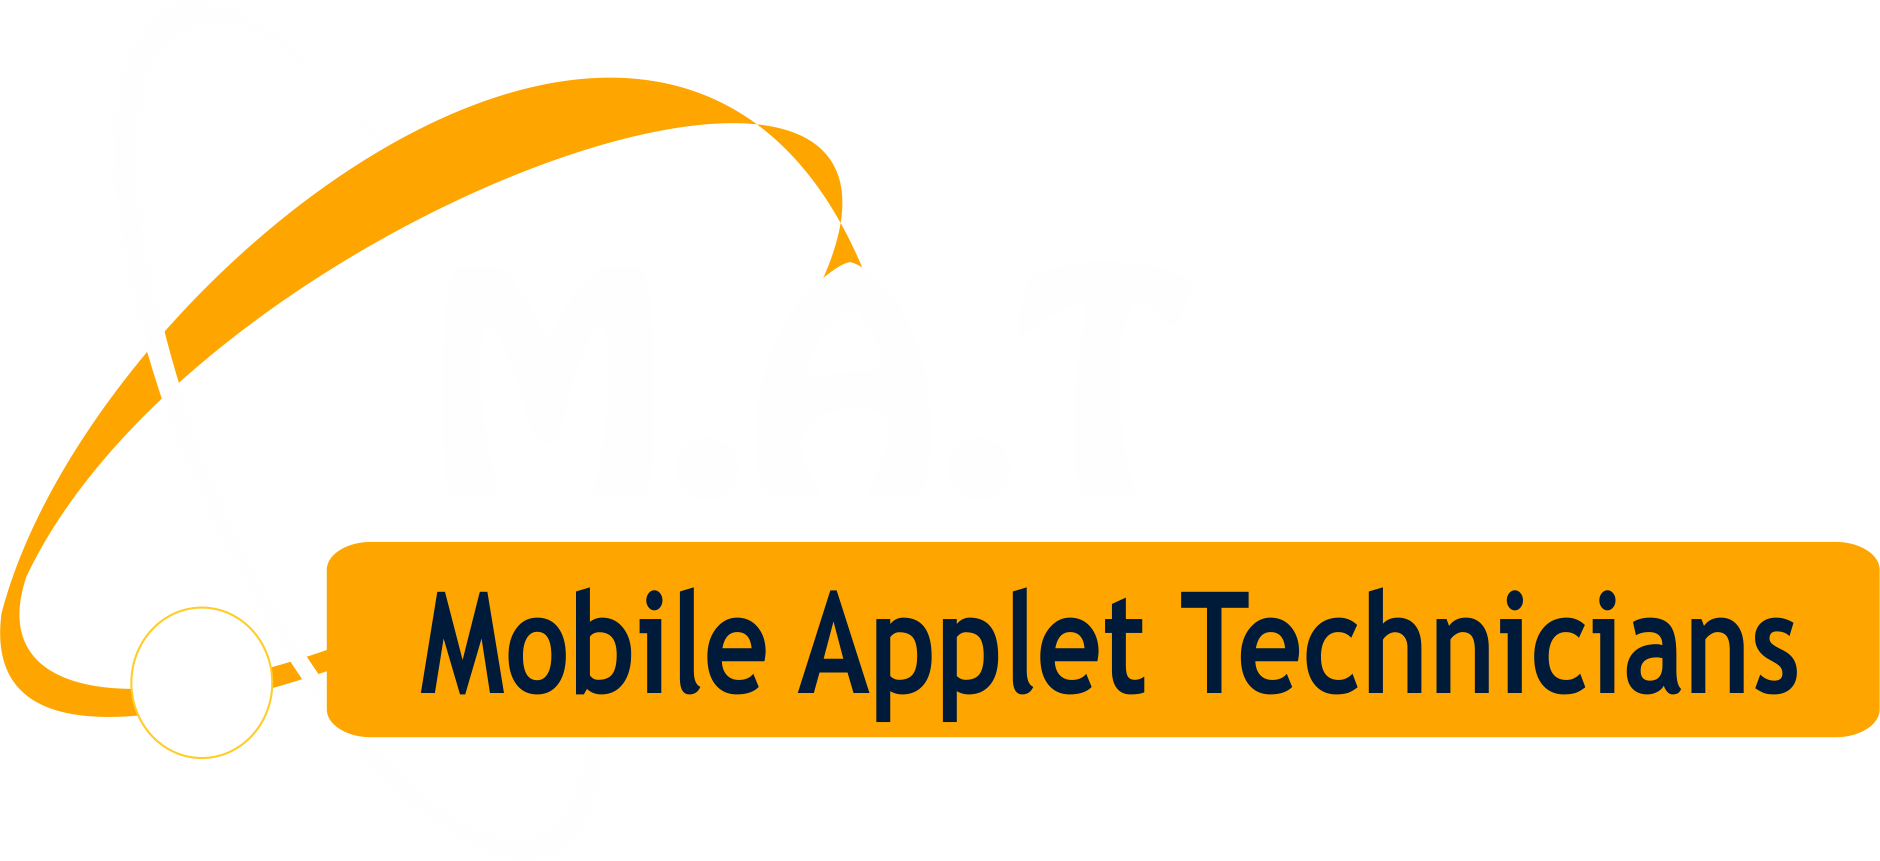 Mobile Applet Technicians